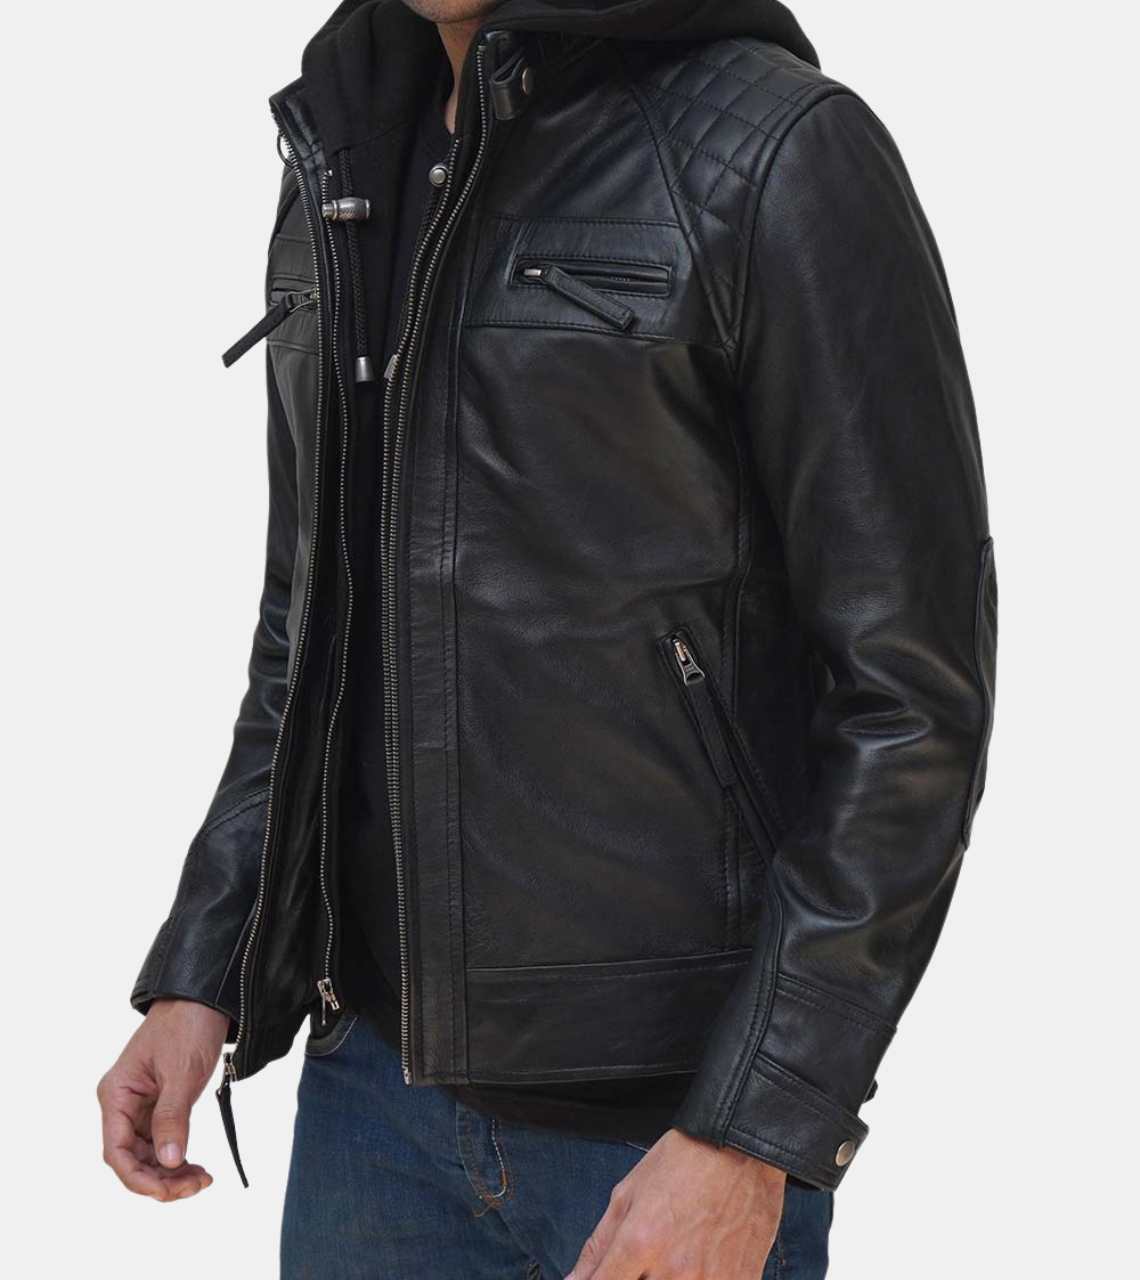  Men's Black Hooded Leather Jacket